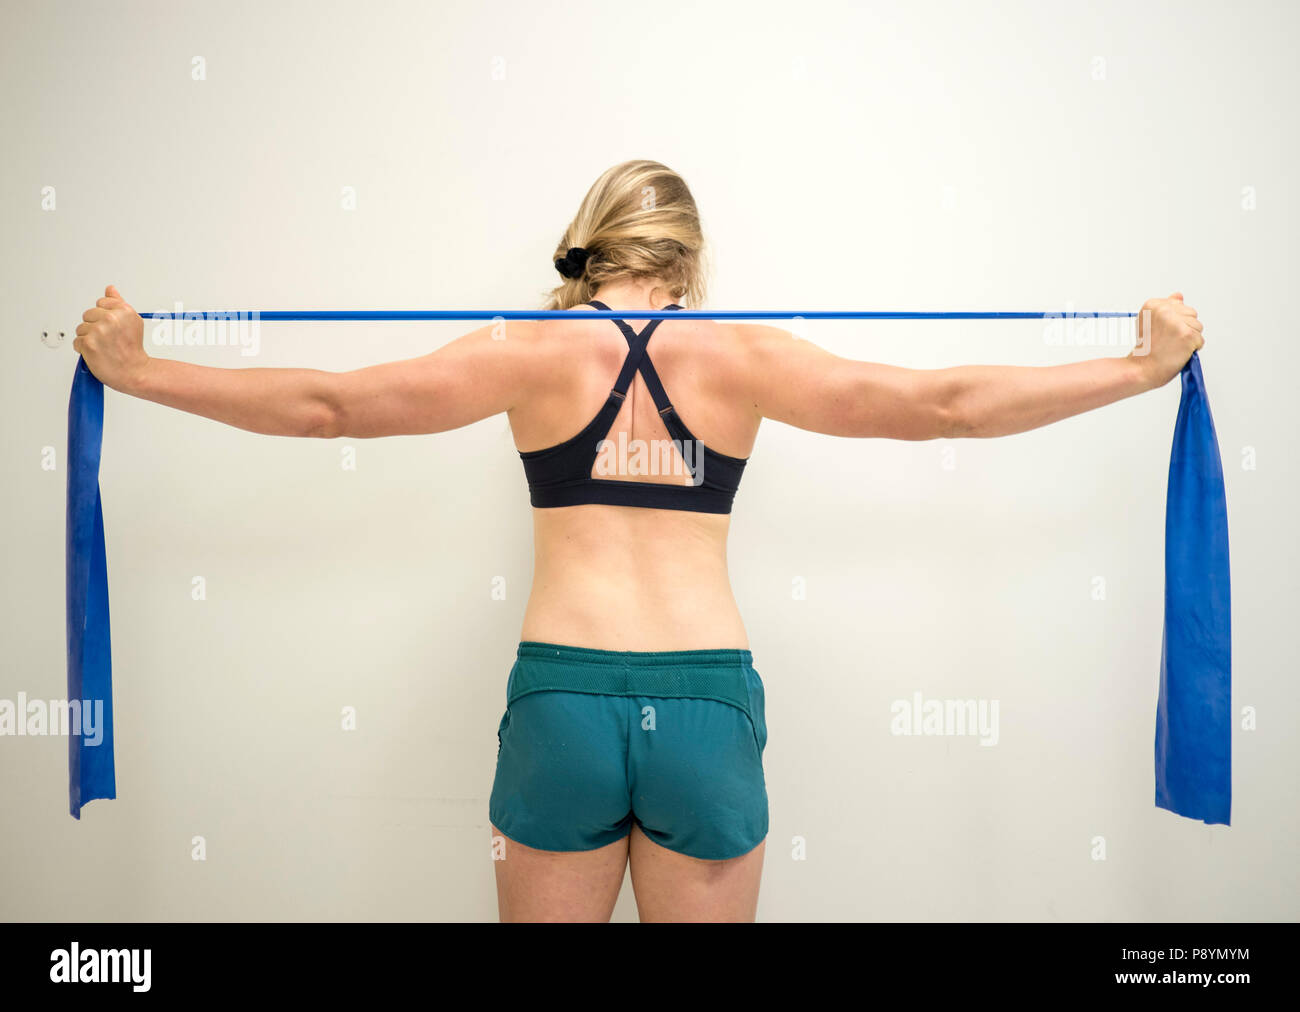 Starken weiblichen Athleten mit einem Widerstand theraband ihre Arme  Muskeln zu stärken Stockfotografie - Alamy